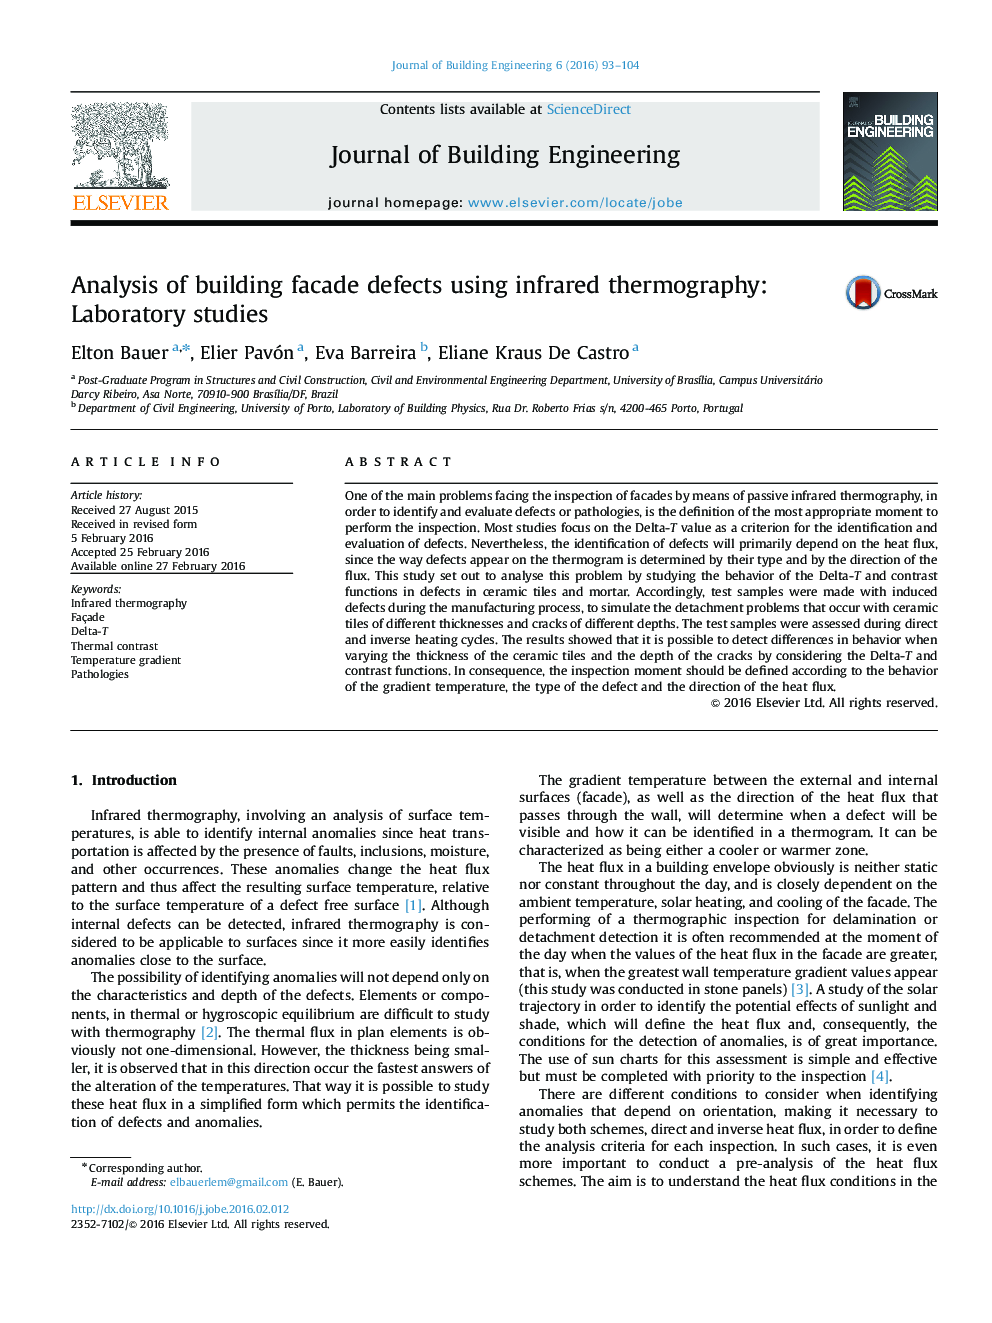 تجزیه و تحلیل نقص در نمای ساختمان با استفاده از ترموگرافی مادون قرمز: مطالعات آزمایشگاهی